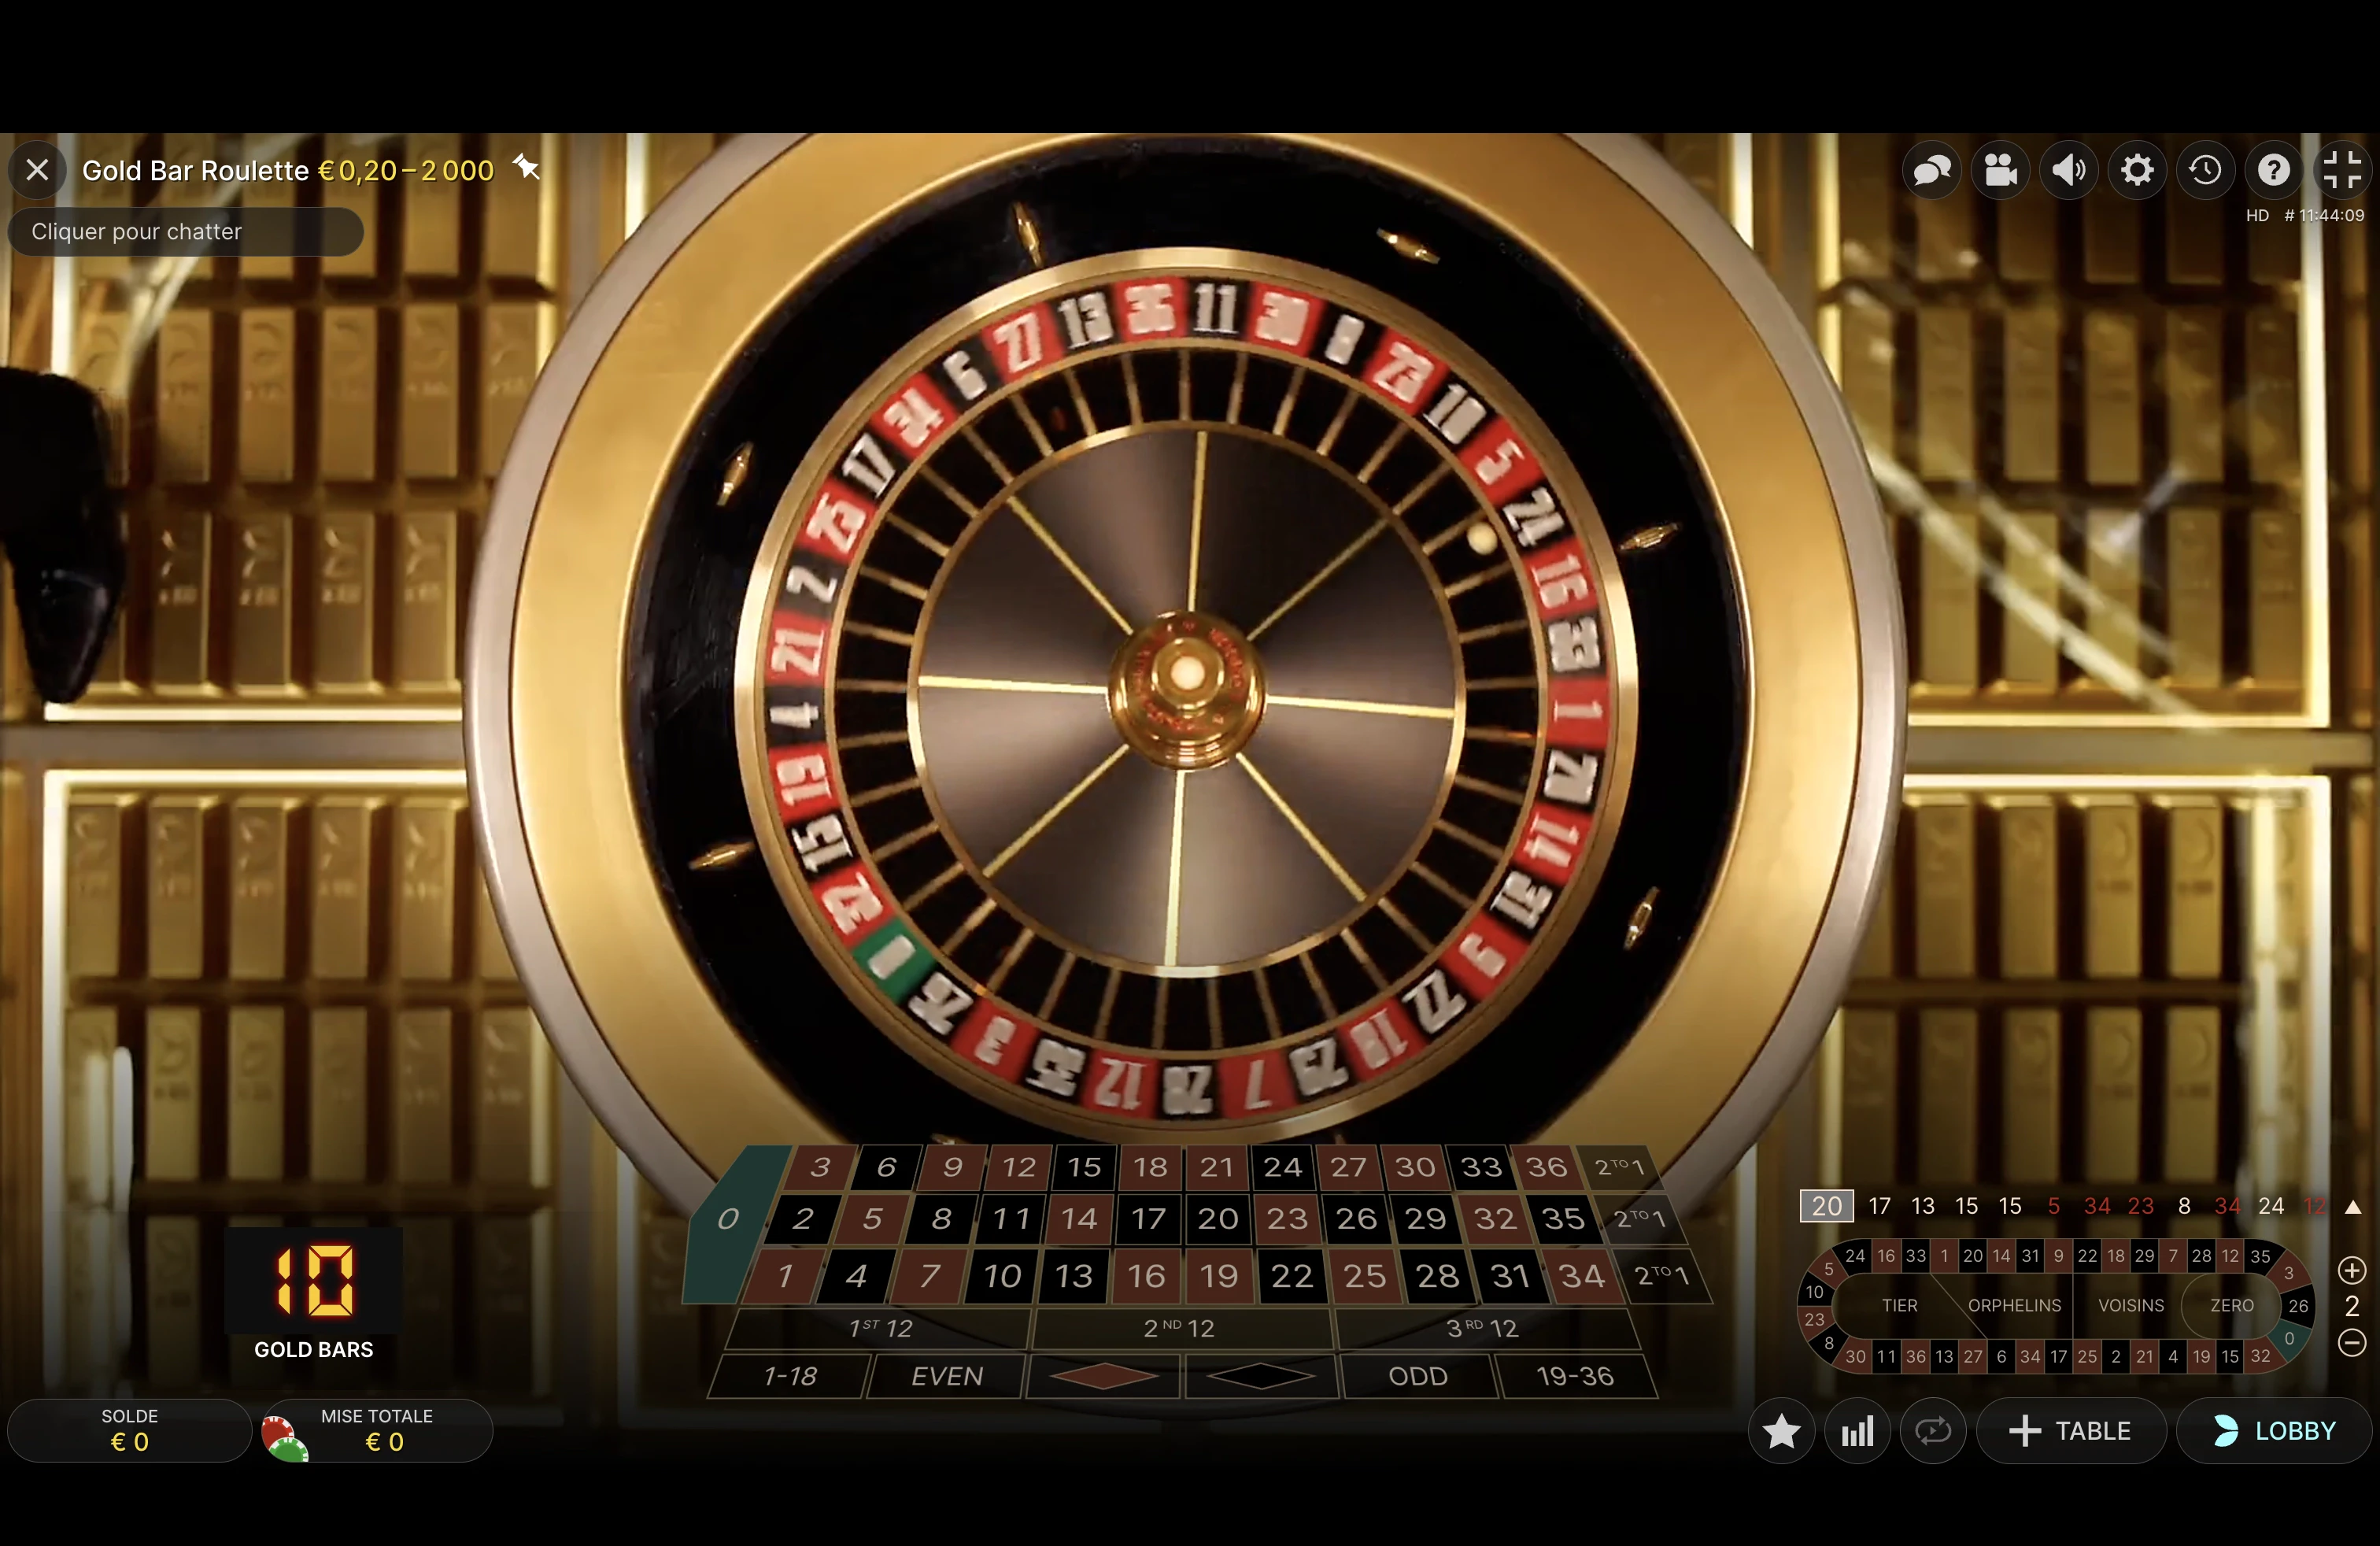 Explication d’un tour classique de la roulette Gold Bar Roulette du provider Evolution Gaming